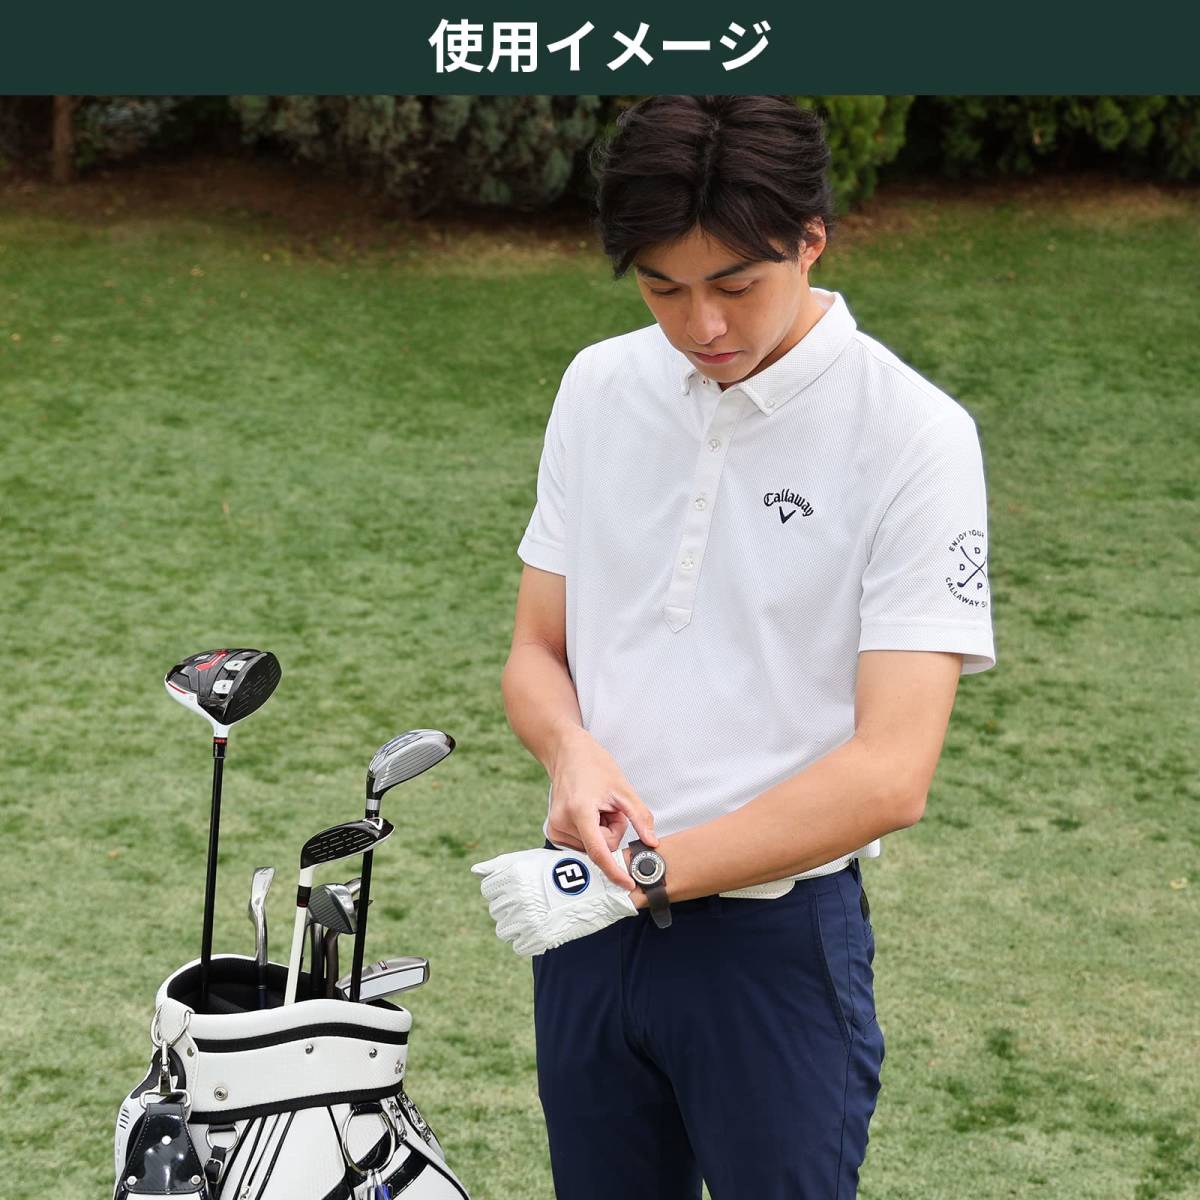 【人気商品】Tabata(タバタ) スコアカウンター ゴルフ 腕時計 ゴルフラウンド用品 ウォッチスコアカウンターIII GV09_画像5